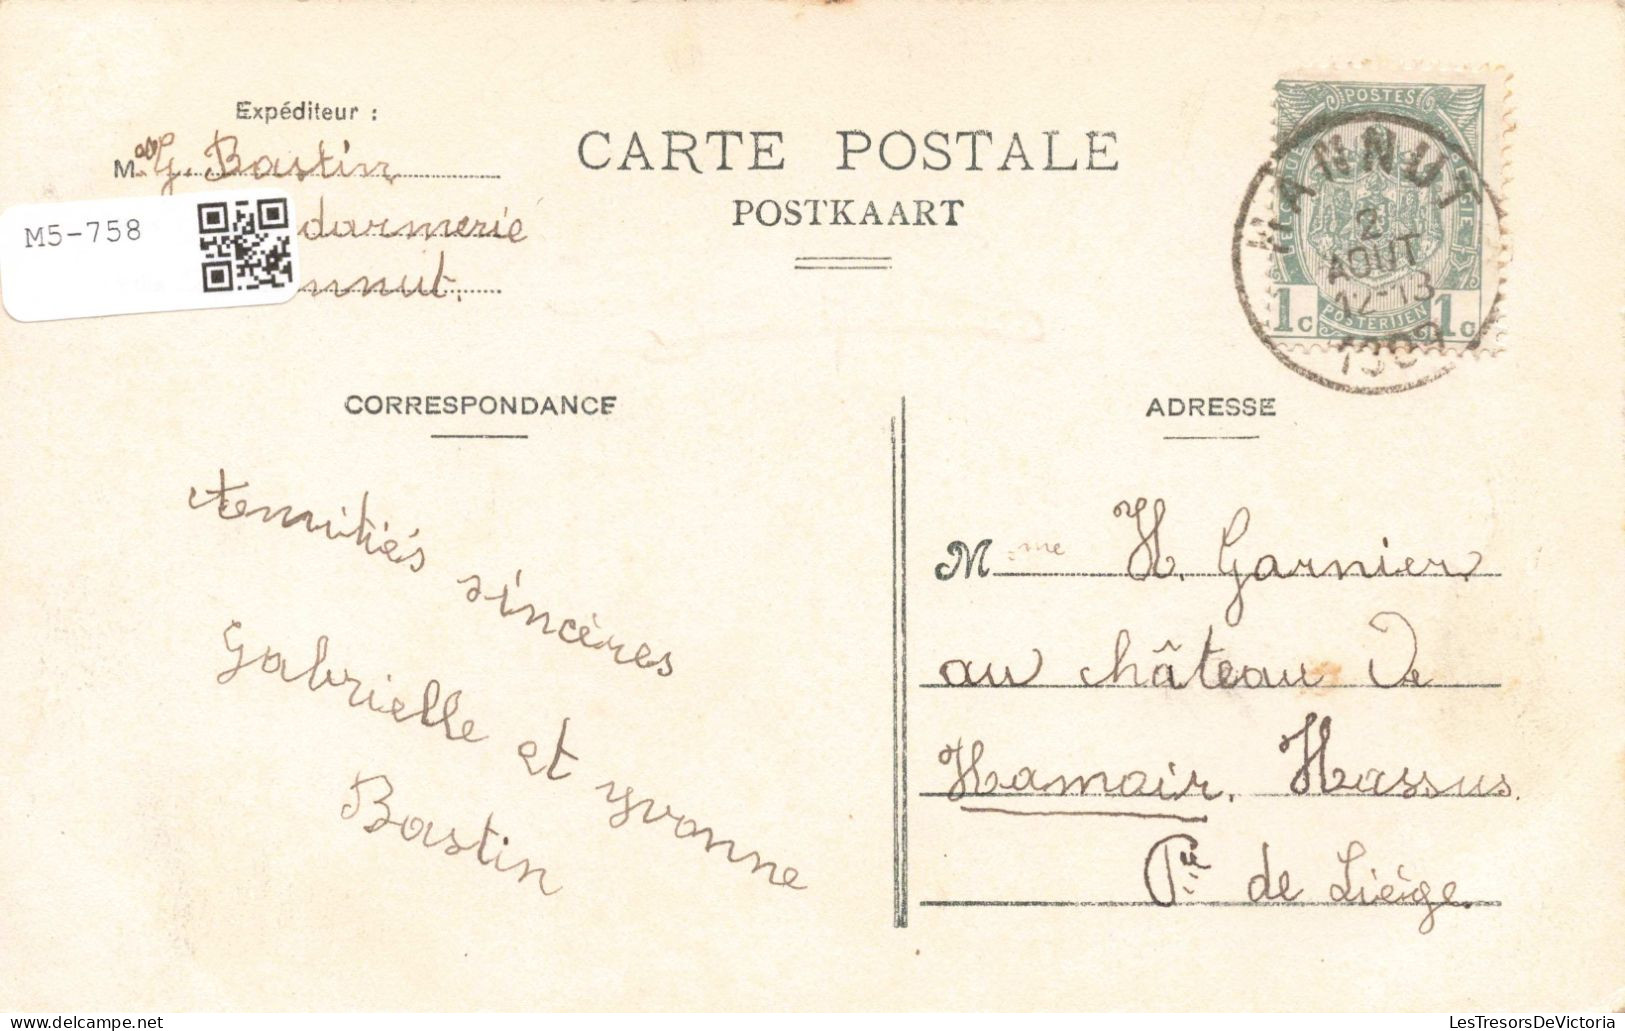 BELGIQUE - Hannut - Le Vieux Château -  Carte Postale Ancienne - Waremme